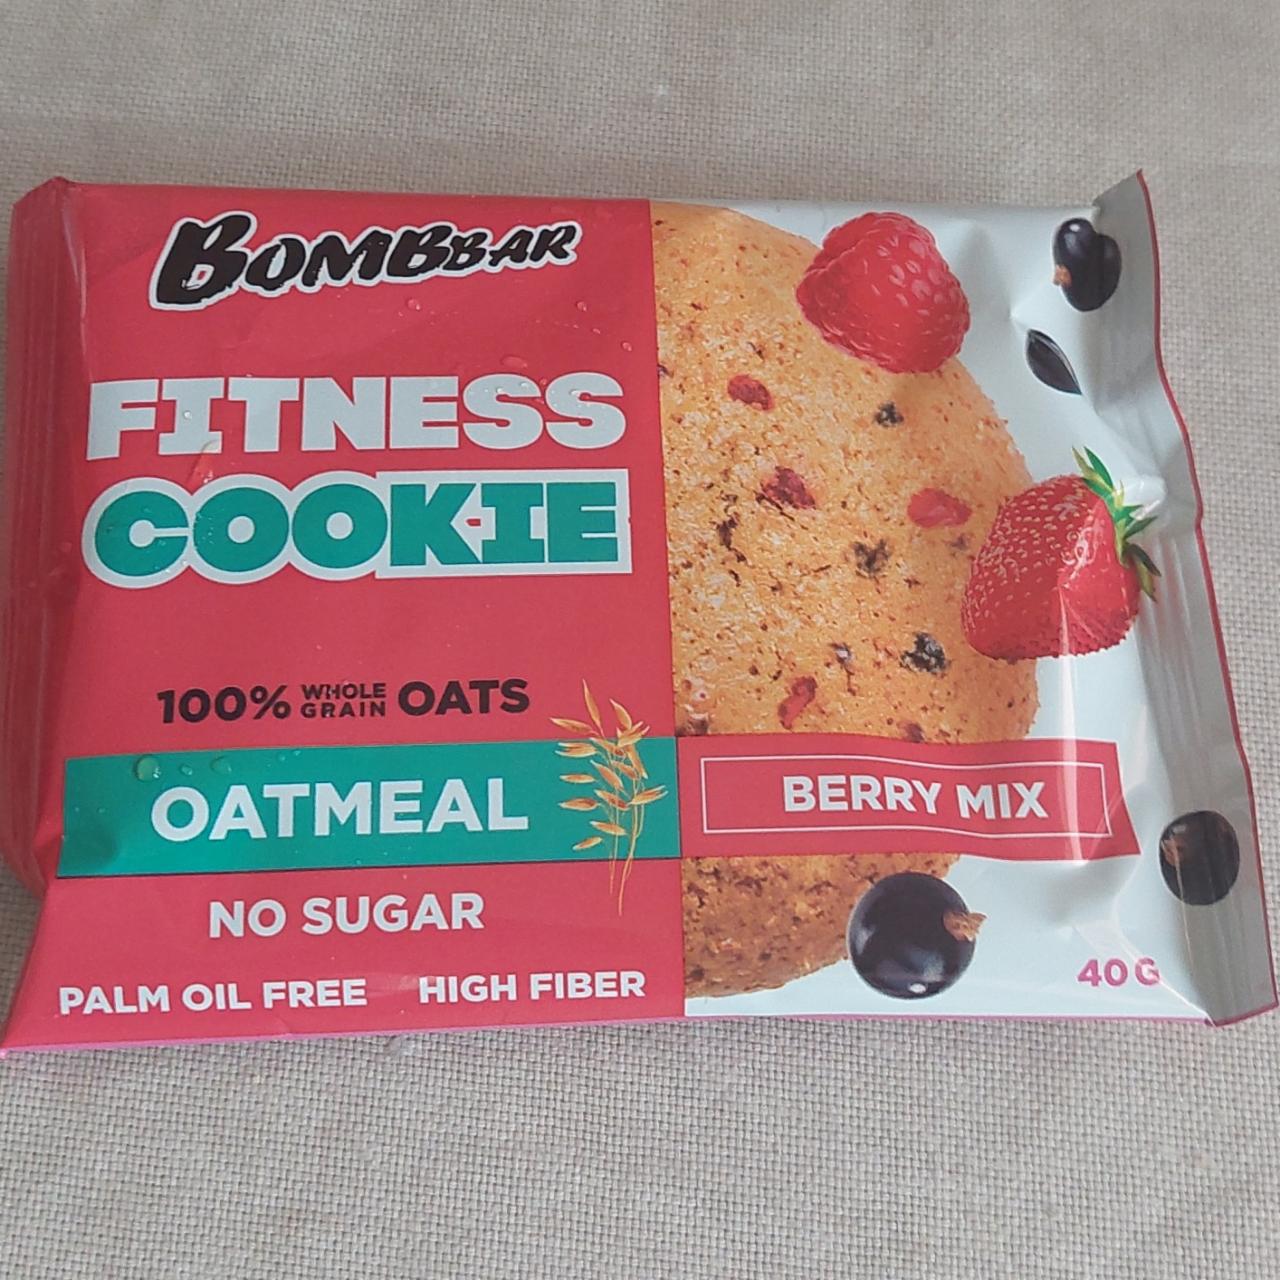 Фото - Печенье неглазированное овсяное Ягодный Микс fitness cookie oatmeal Berry mix Bombbar